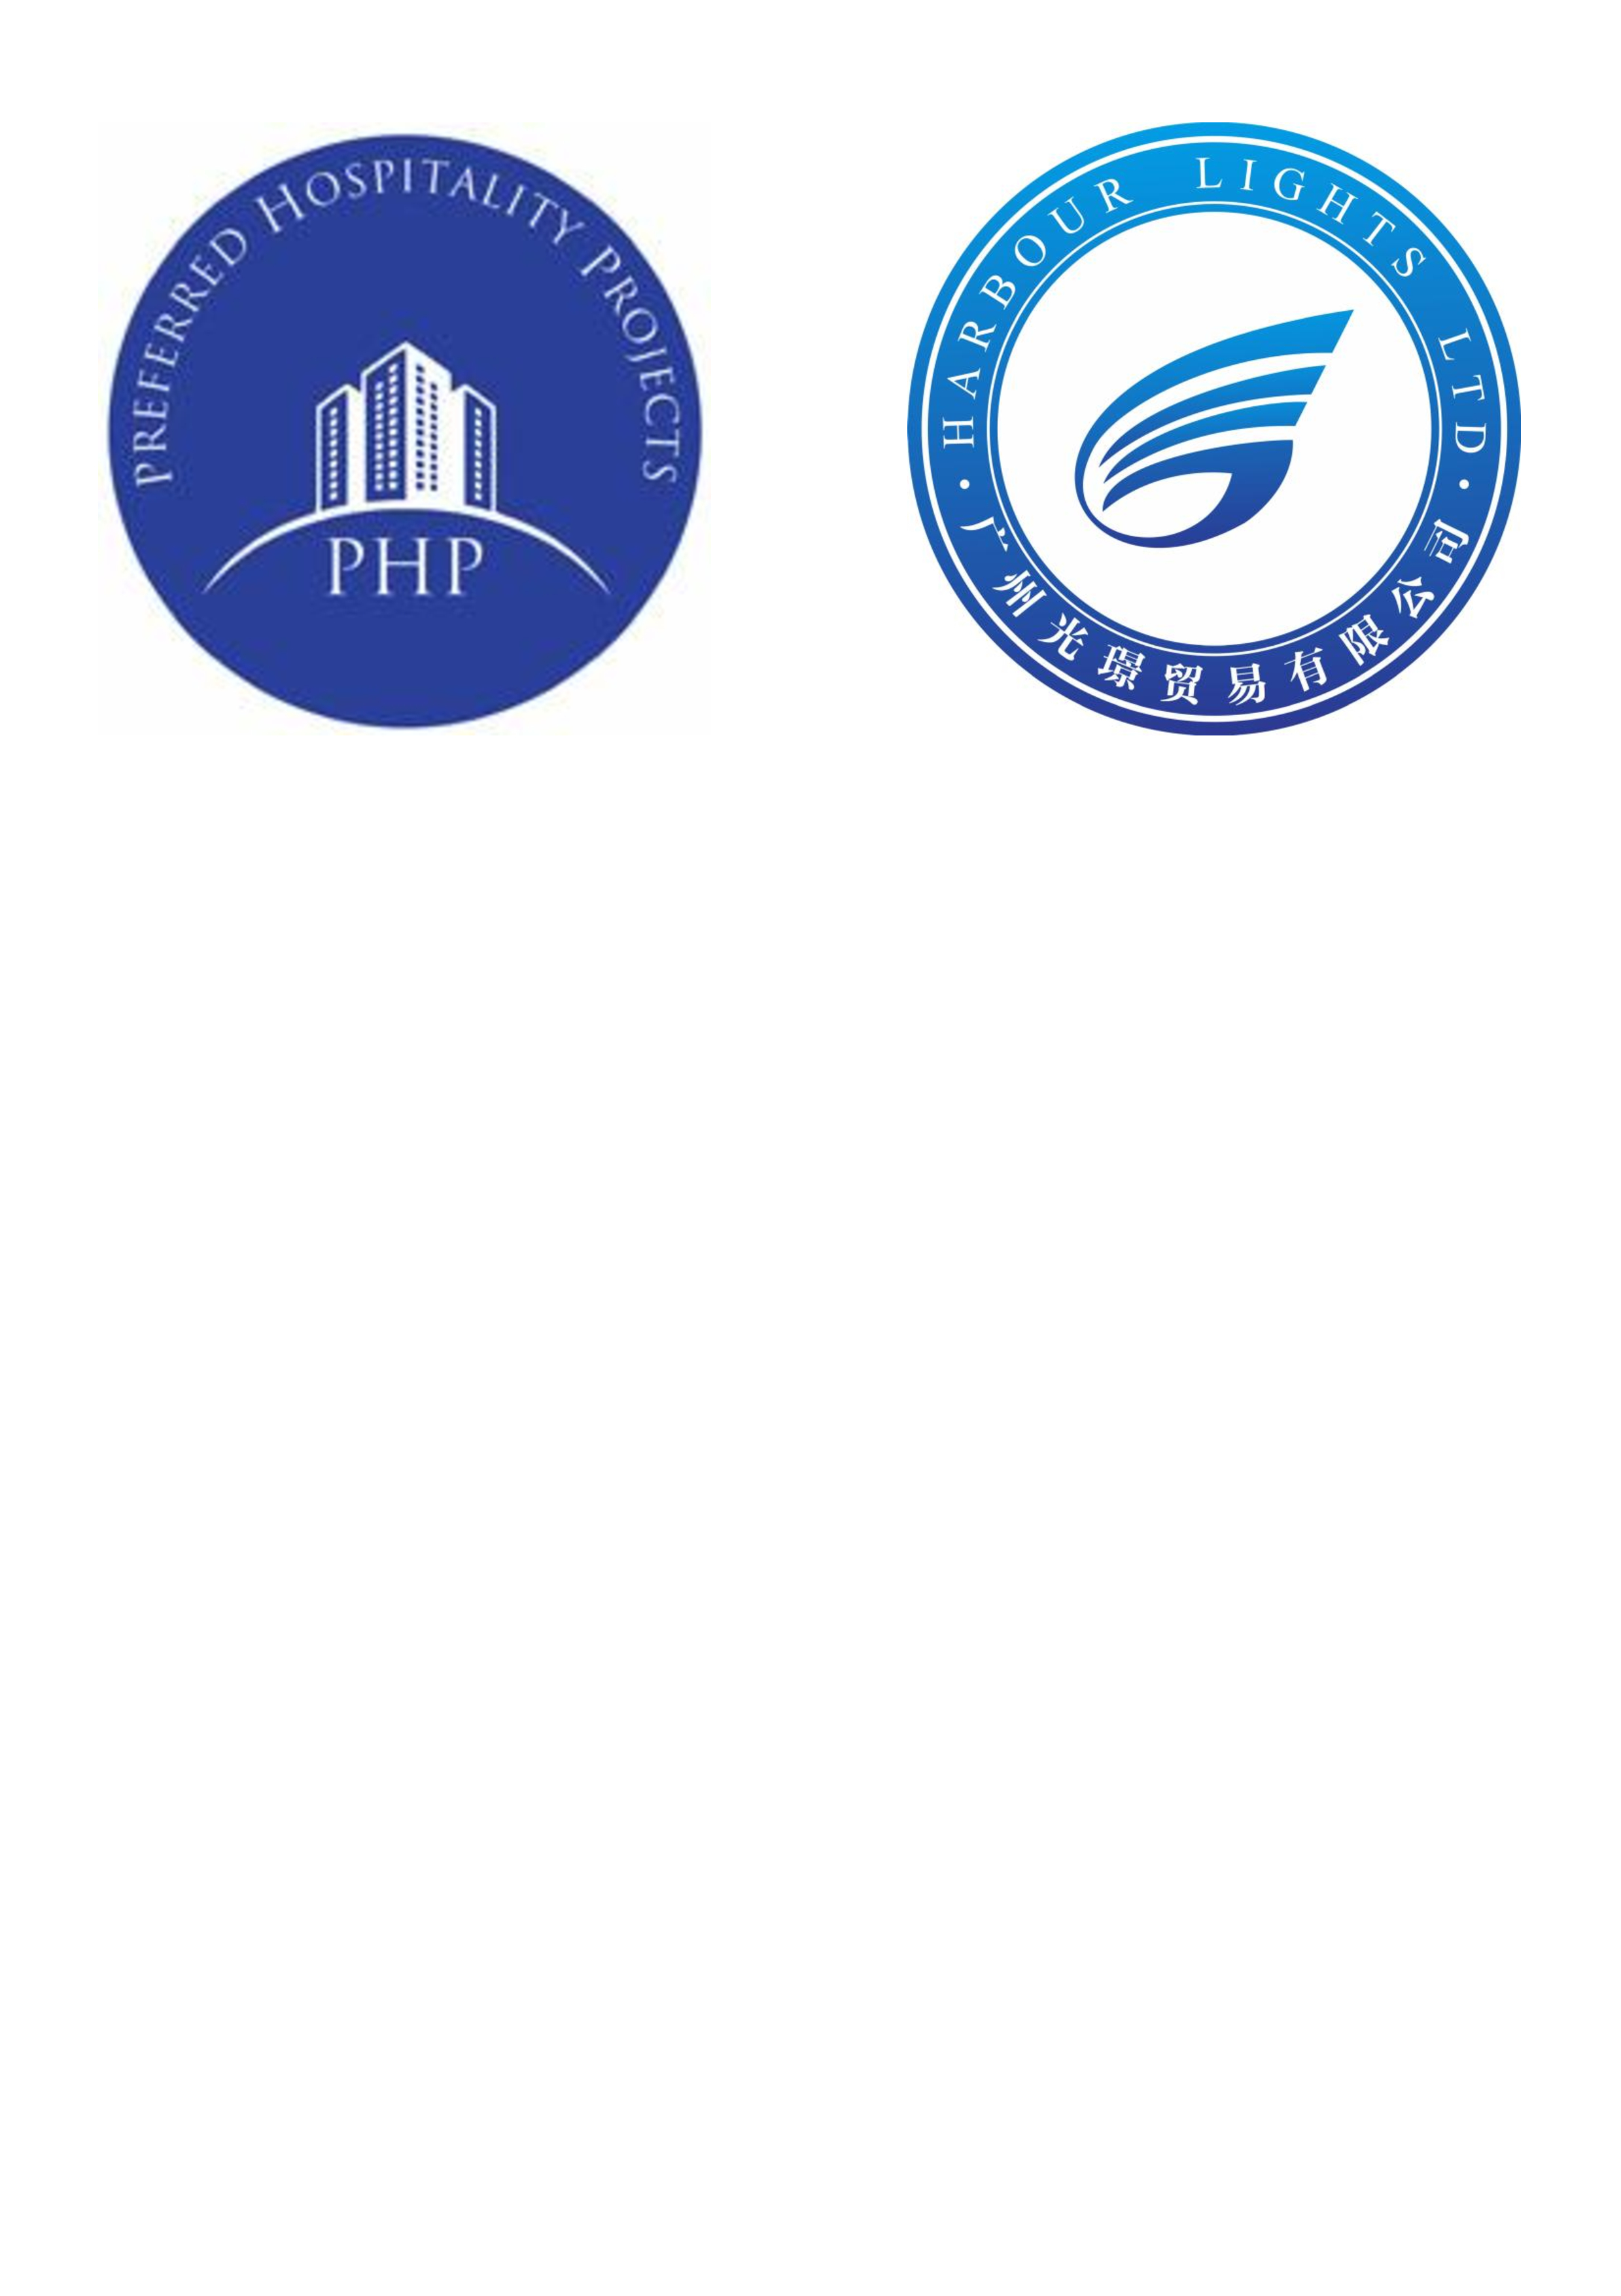 Both Logos